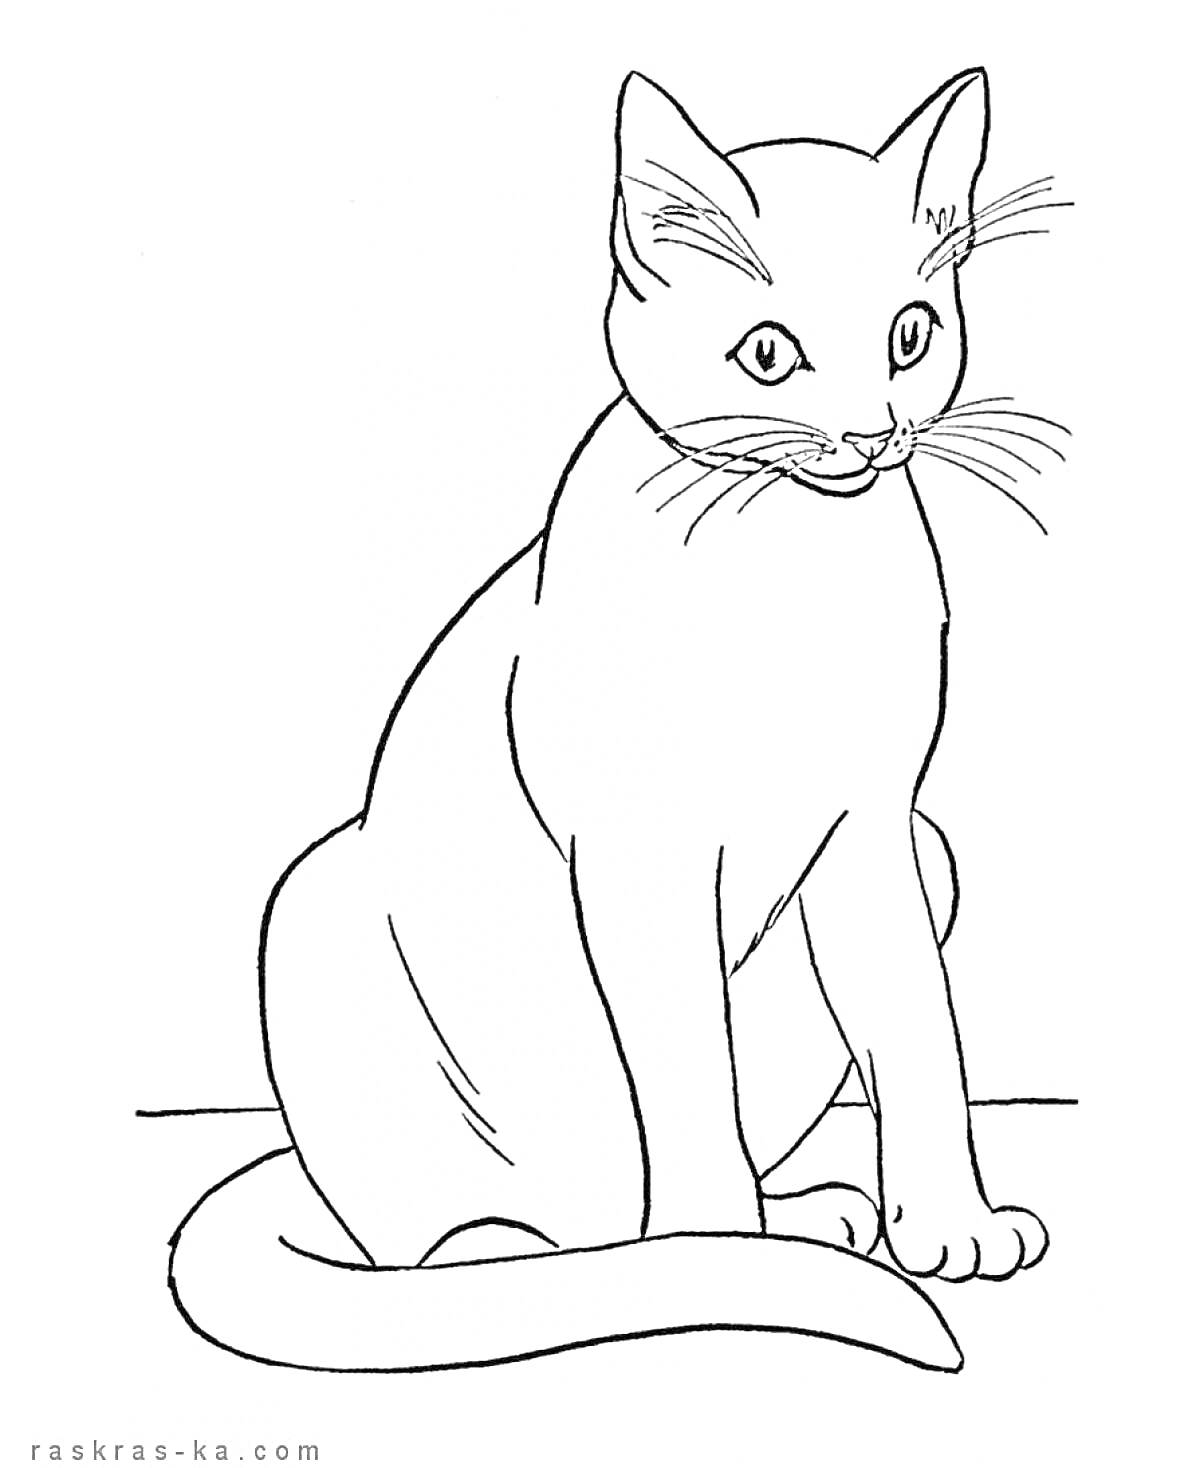 Сидящий кот с длинным хвостом, смотрящий вперед